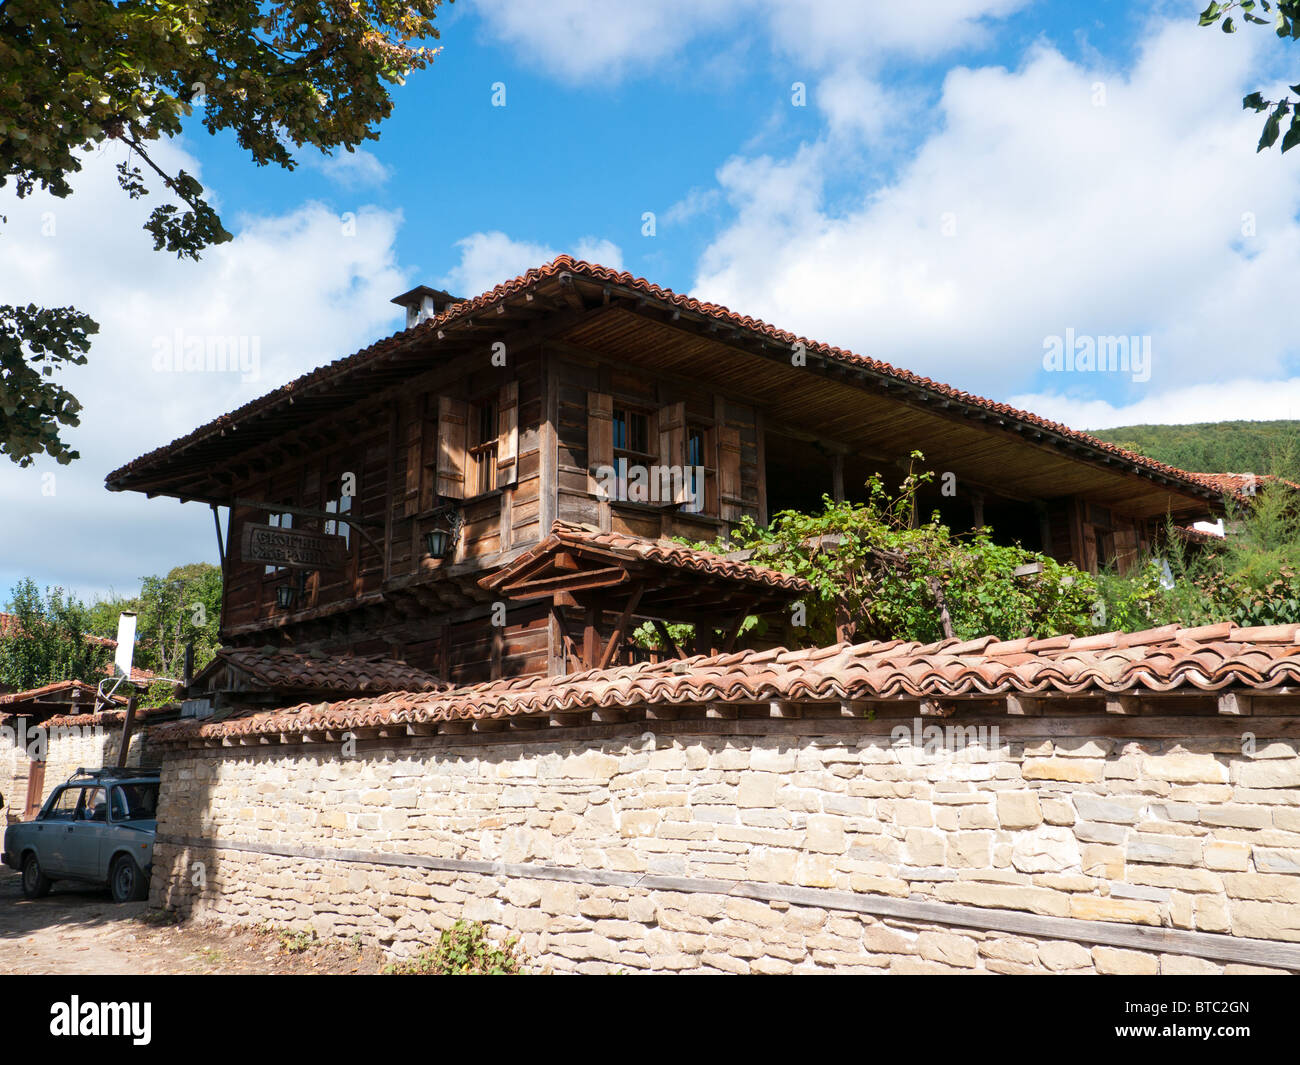 Maison traditionnelle en bois dans le vieux village préservé d'Zhervana, Bulgarie, Balkans, Blue Mountains Banque D'Images